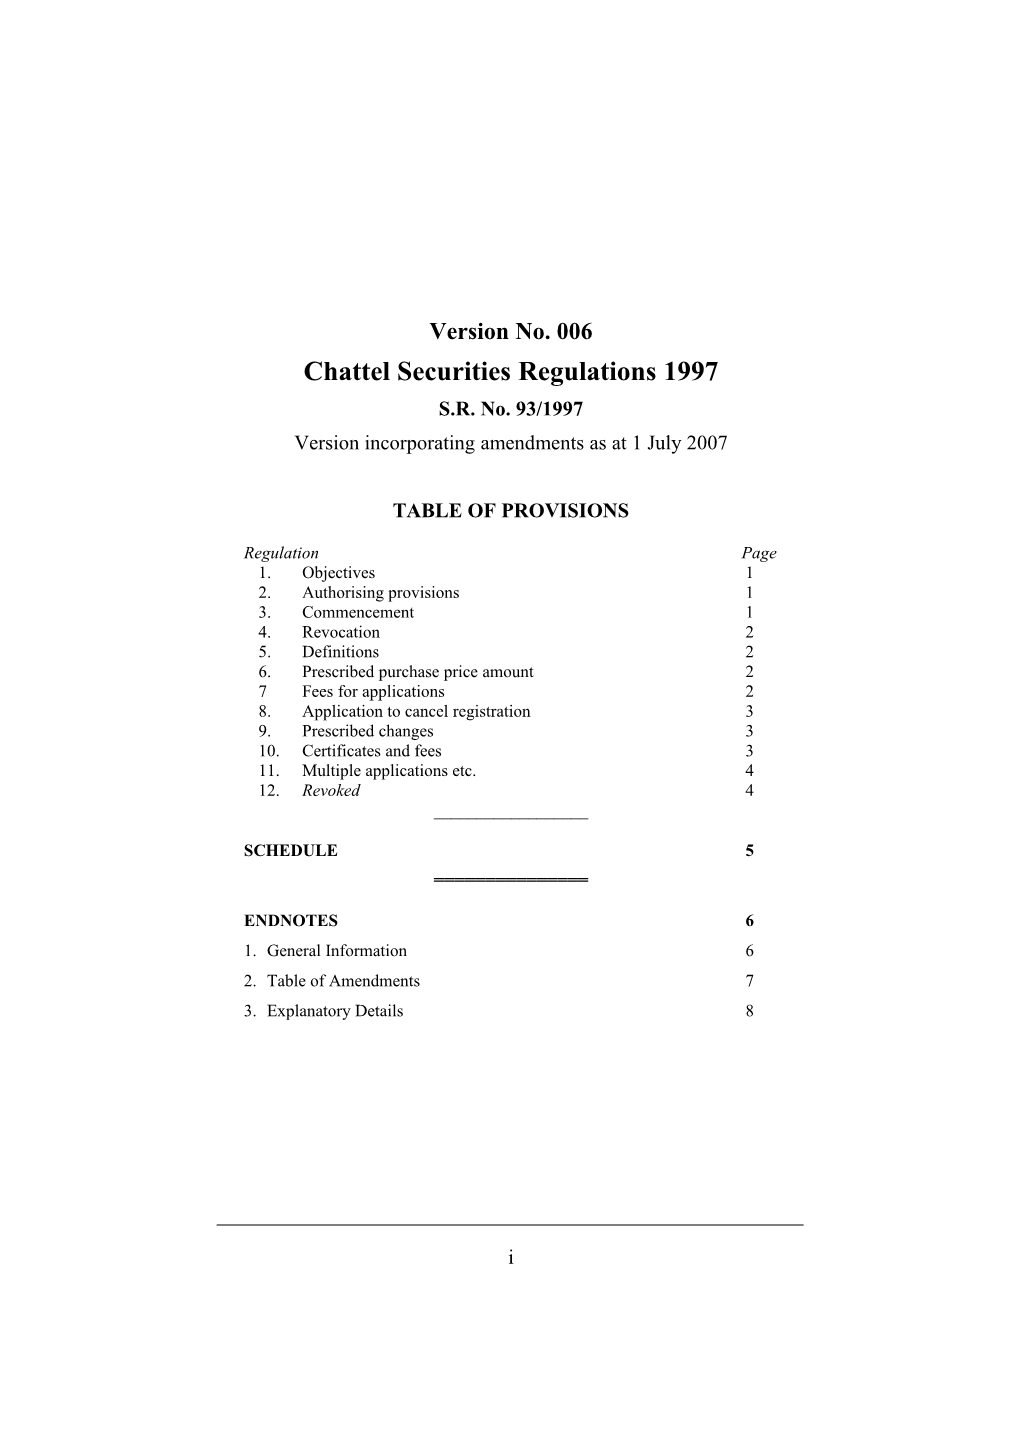 Chattel Securities Regulations 1997